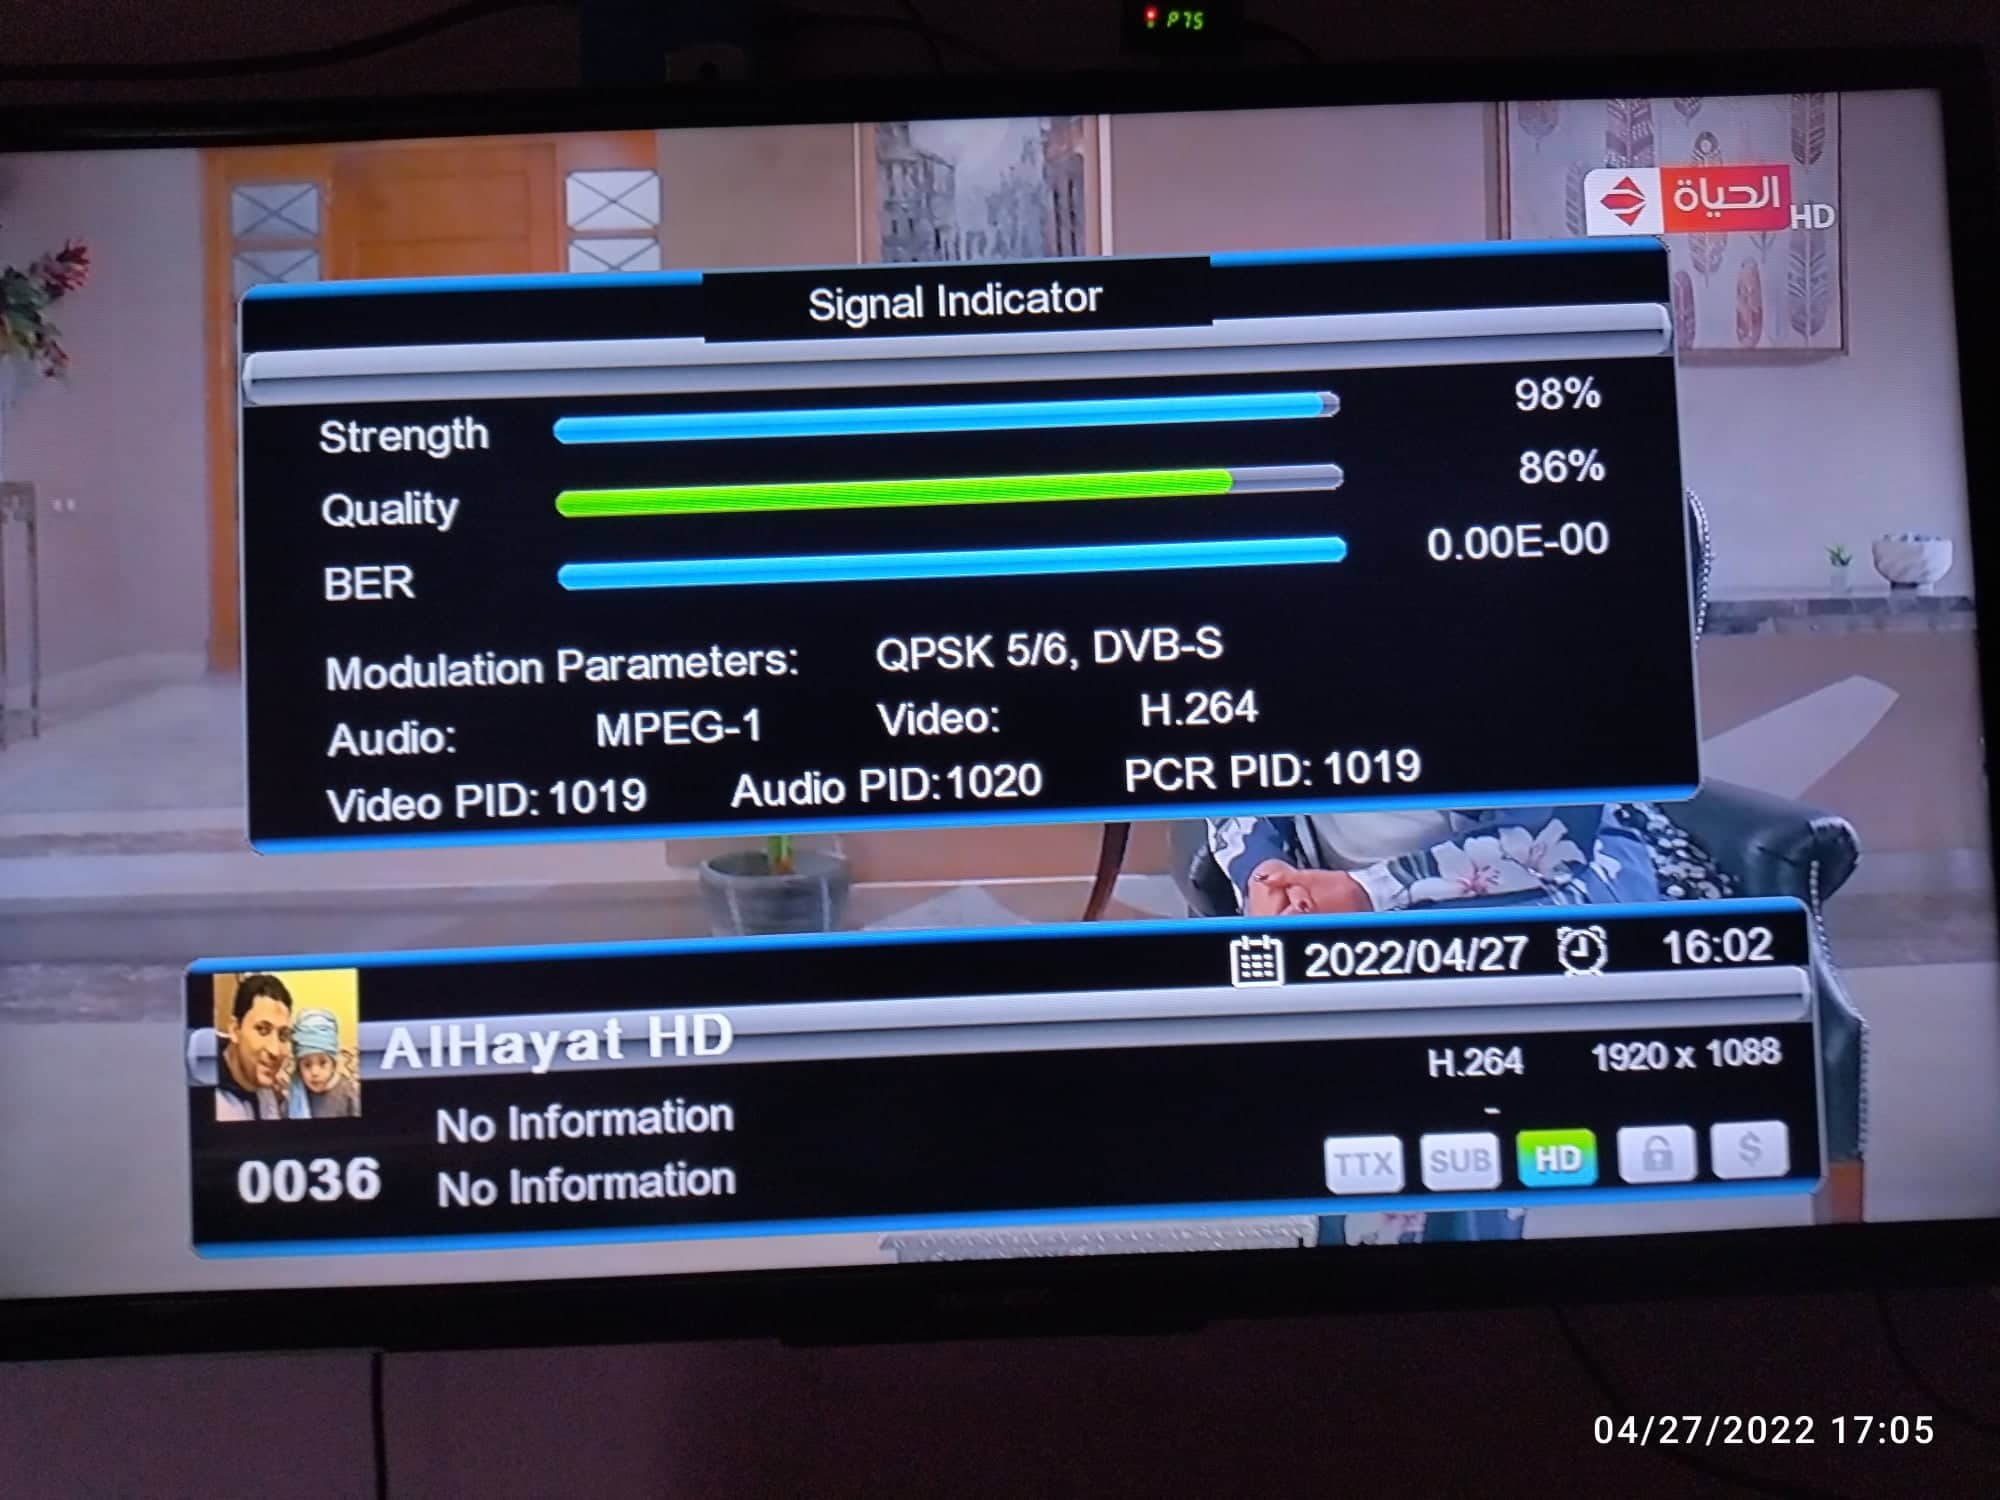 تحويل أجهزة الاسترا G1 الي NEW BOX ED777 يوتيوب و IPTV وسهولة إضافة BISS سوفت جديد تاريخ 24-4-2022 P_23089l13r3